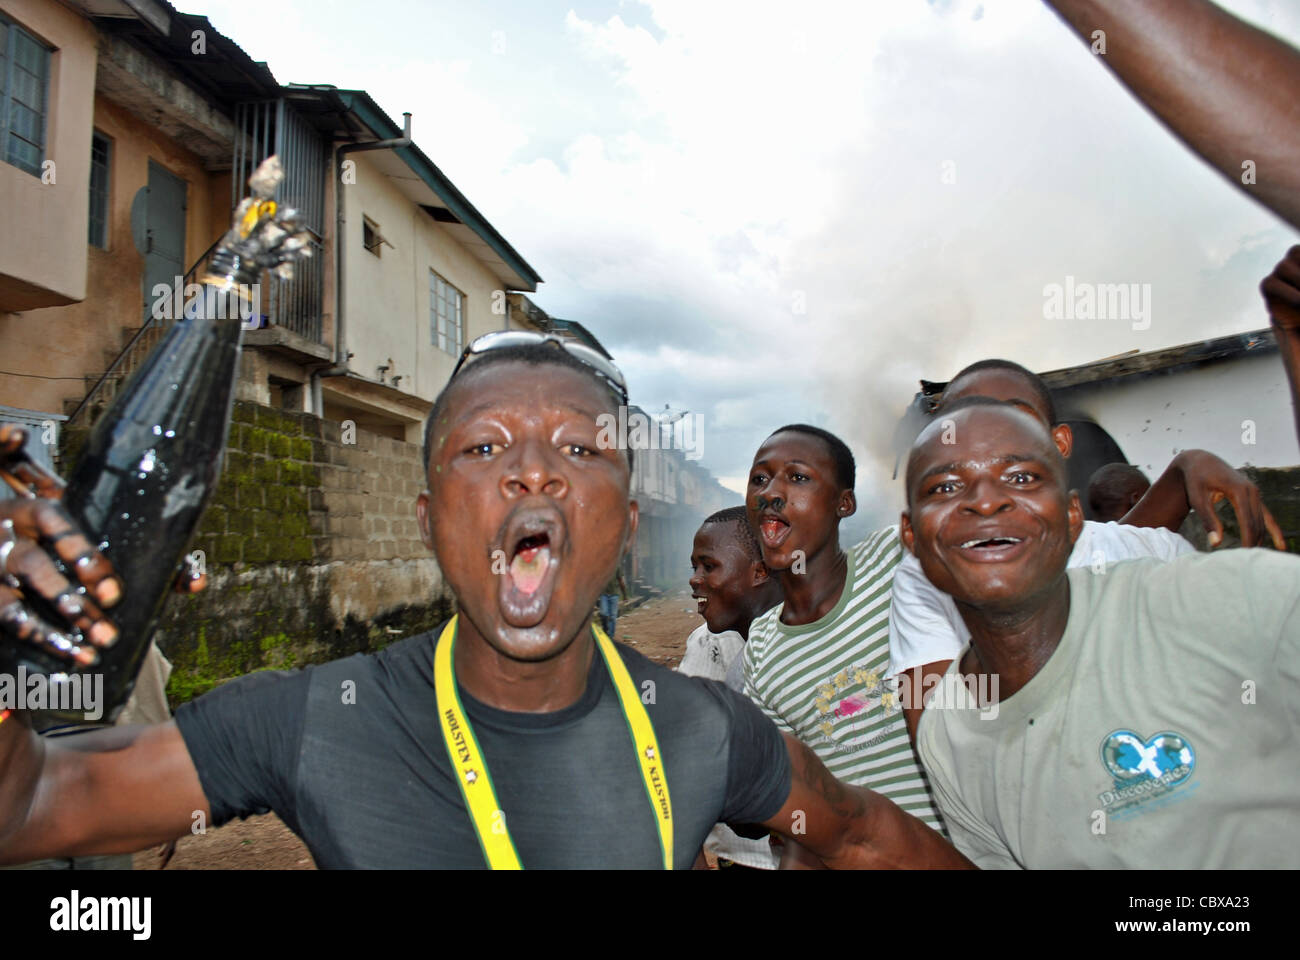 Les partisans du SLPP Julius Maada Bio candidat rampage avec cocktails Molotov au cours de la violence politique dans la ville de Bo, Sierra Leone Banque D'Images